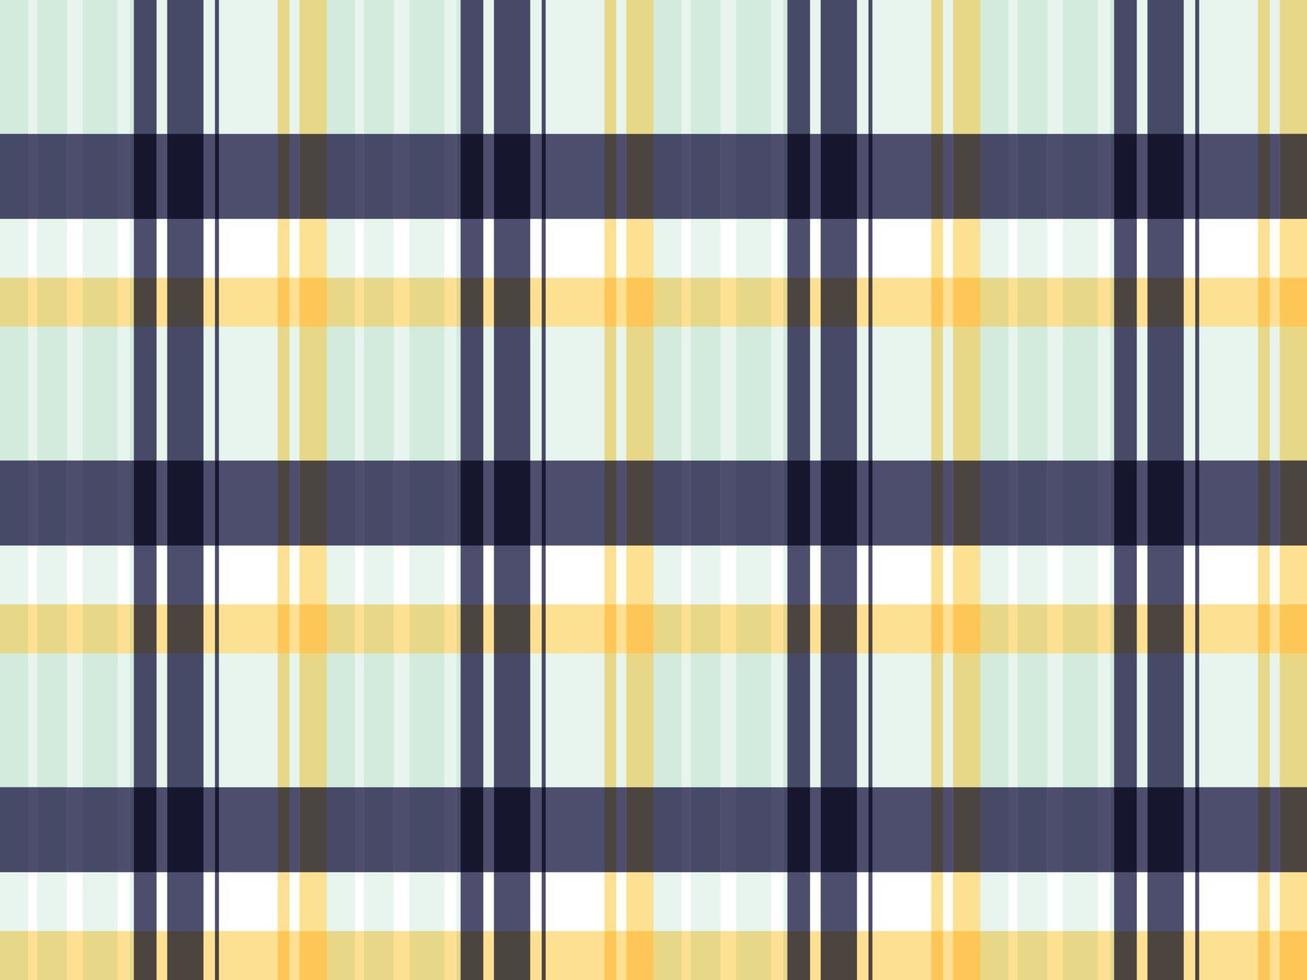 Madras Check Cross Tartan Plaid Pastellfarbe Ein Muster mit bunten Streifen unterschiedlicher Dicke, die sich kreuzen, um ungleichmäßige Karos zu erzeugen. Wird normalerweise für Hemden verwendet. vektor